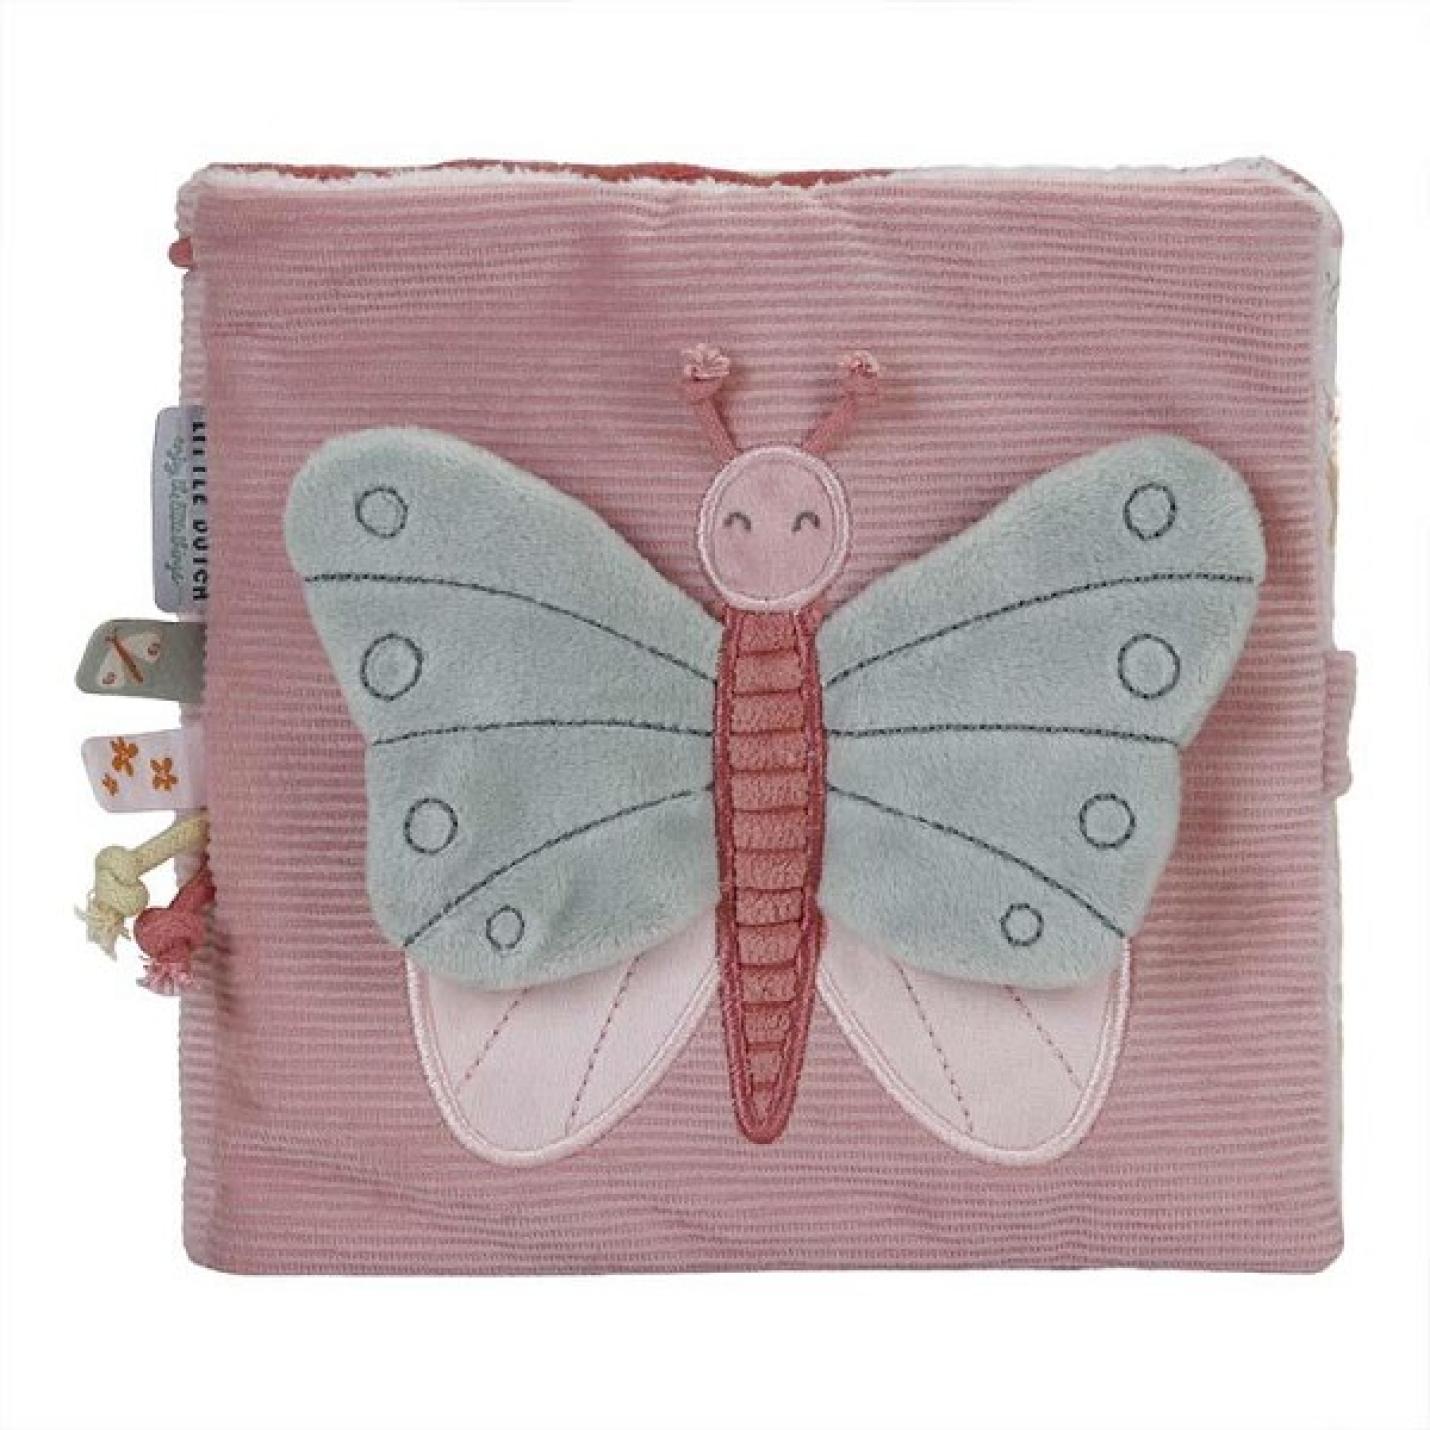 Activiteitenboekje flowers & butterfly's is roze van stof met aan de zijkant meerdere labels en voorop een grote grijs met roze vlinder